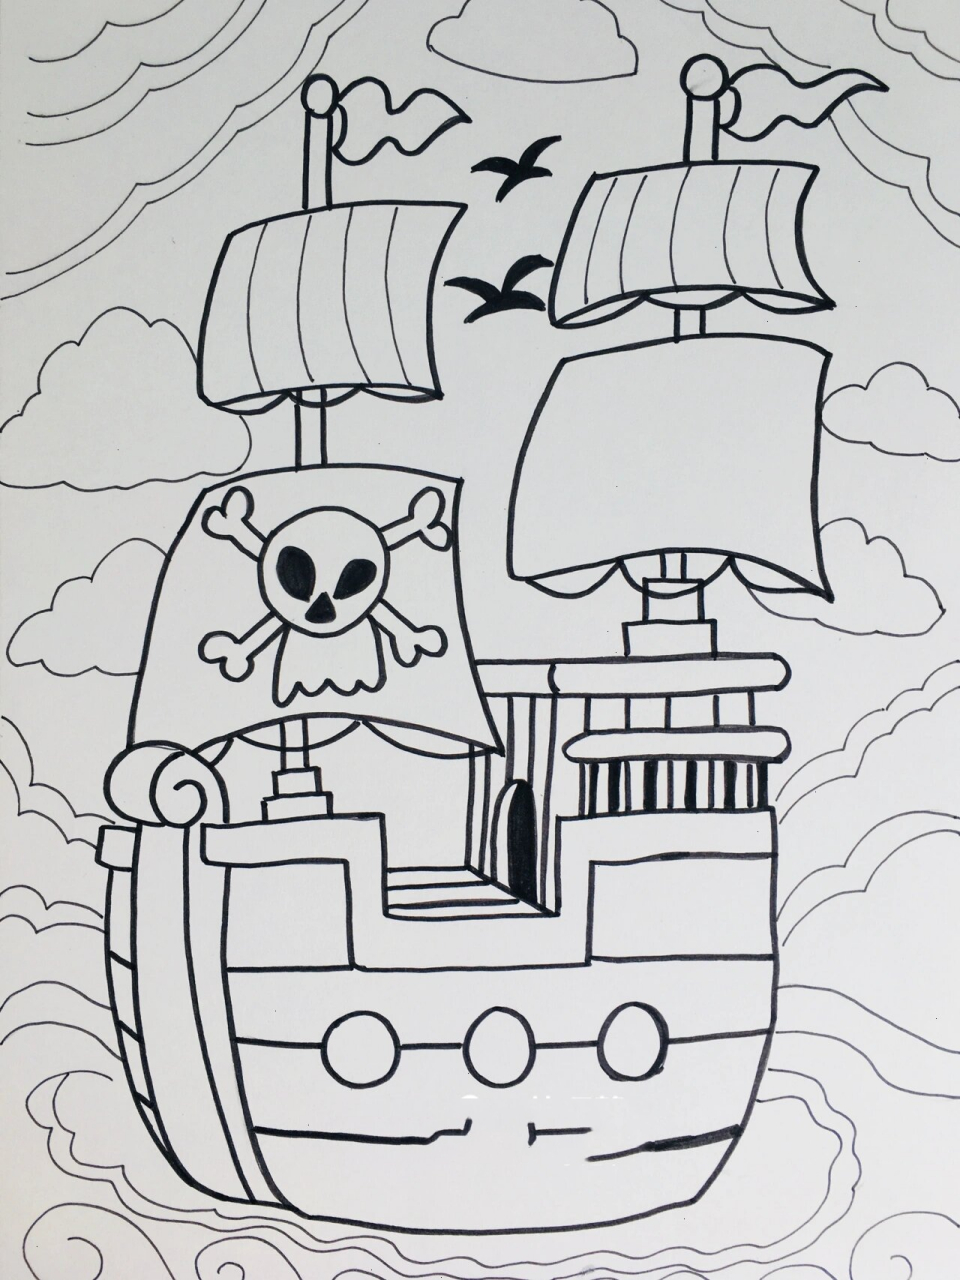 海盗船怎么画 简笔画图片